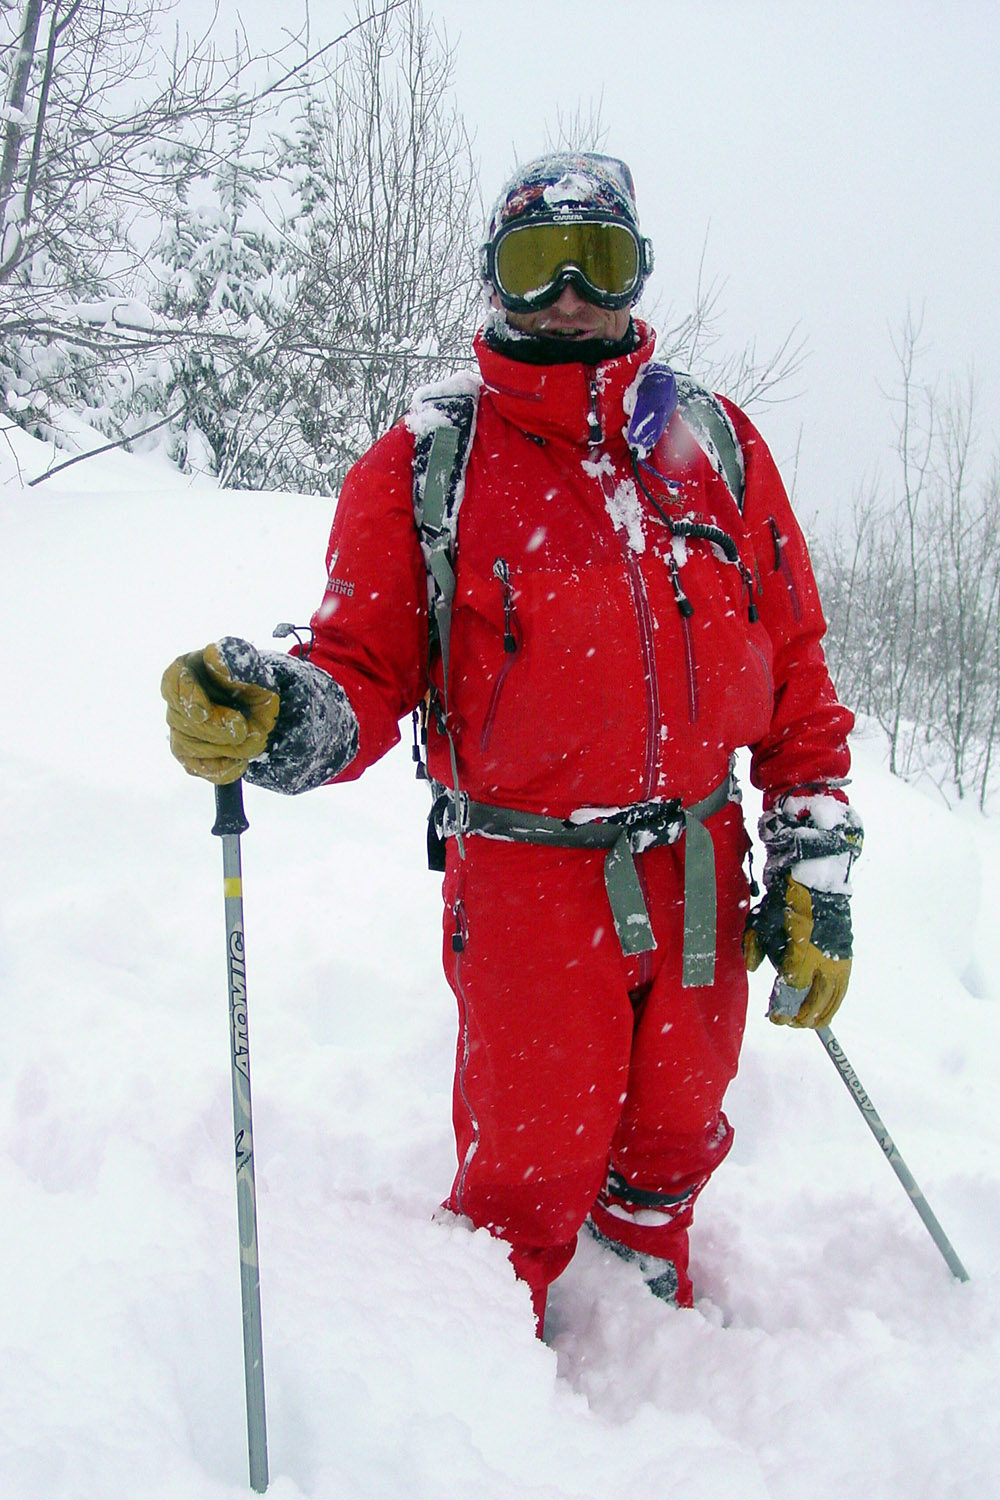 Heli Ski Safety Information